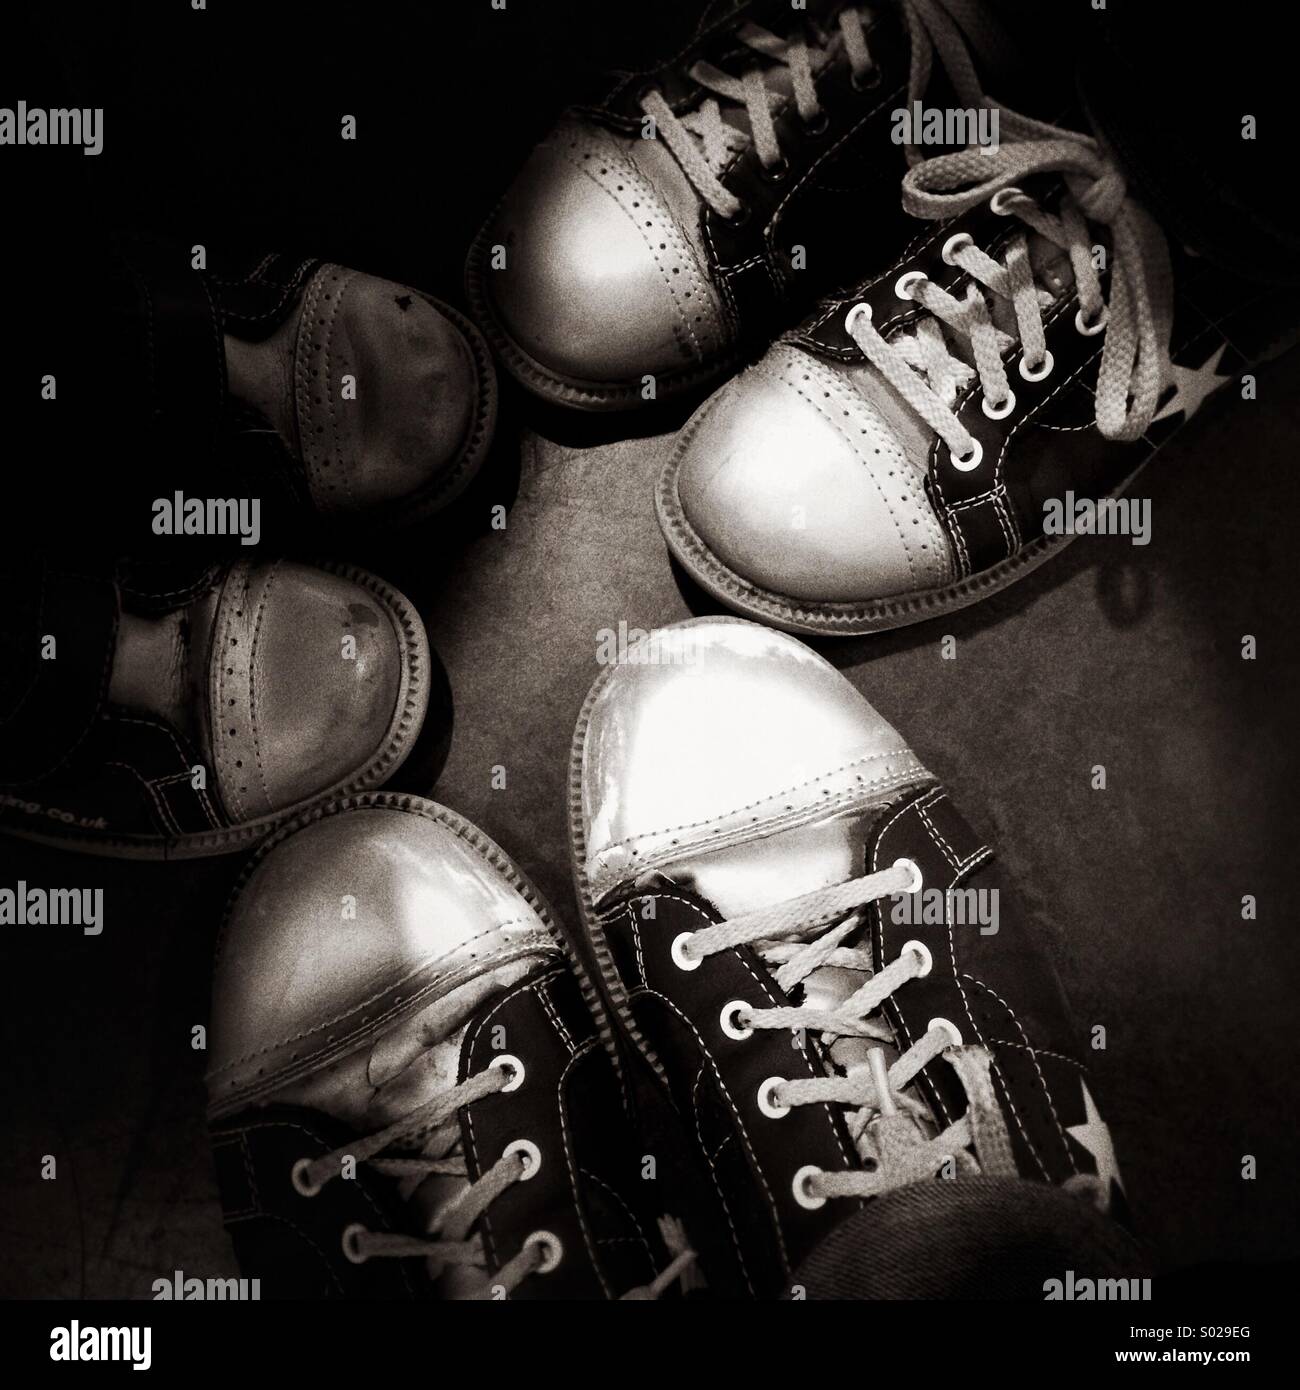 Ten pin bowling shoes Stock Photo